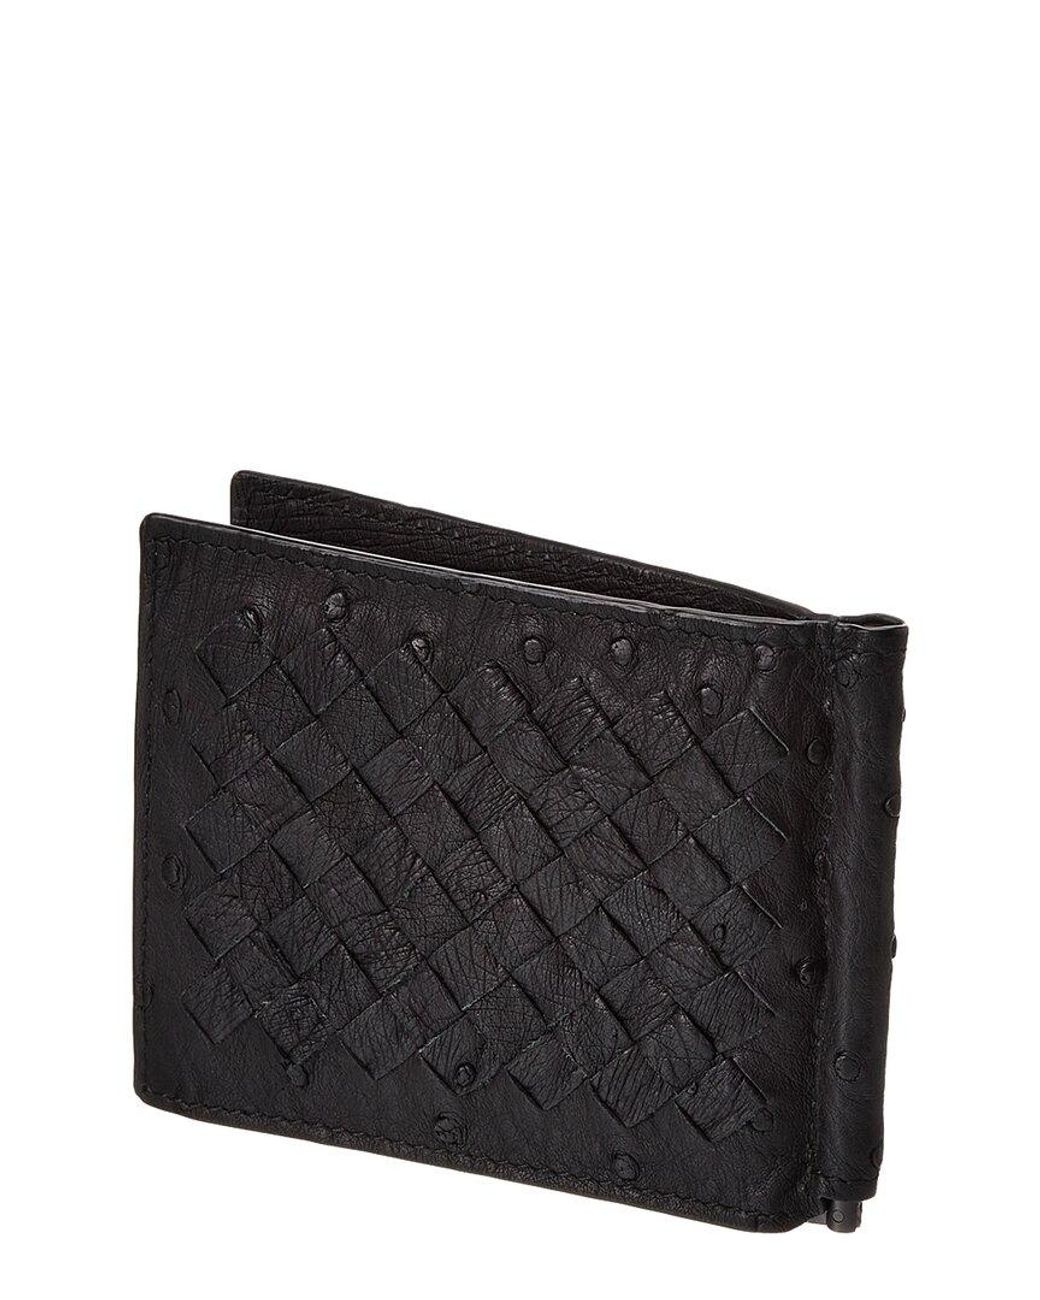 Bottega Veneta Intrecciato Leather Money Clip Wallet in Black for Men | Lyst